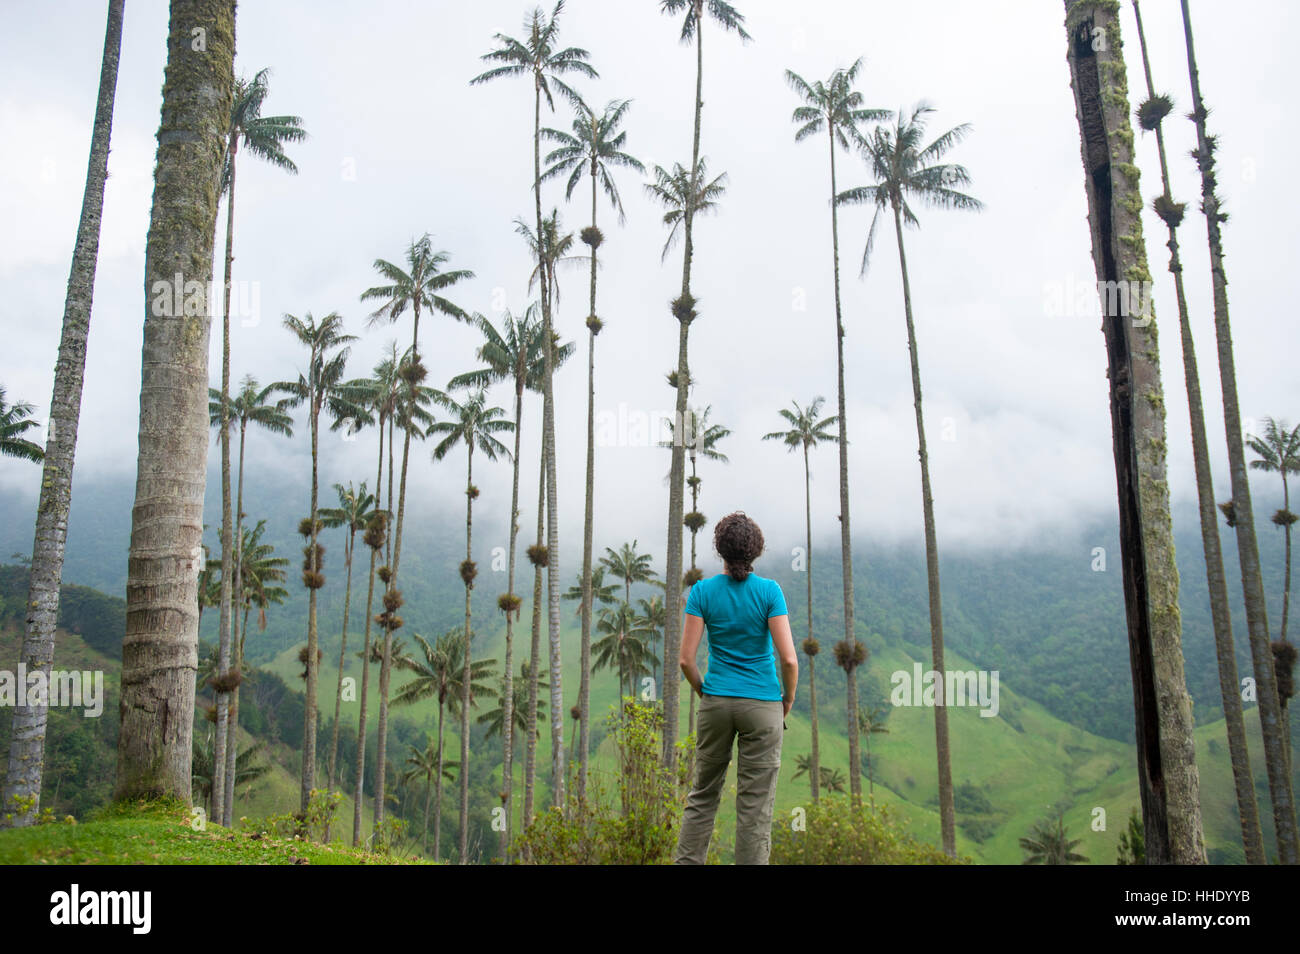 Comité permanent entre les palmiers de cire qui sont les plus élevées au monde dans la vallée de Cocora, Colombie Banque D'Images